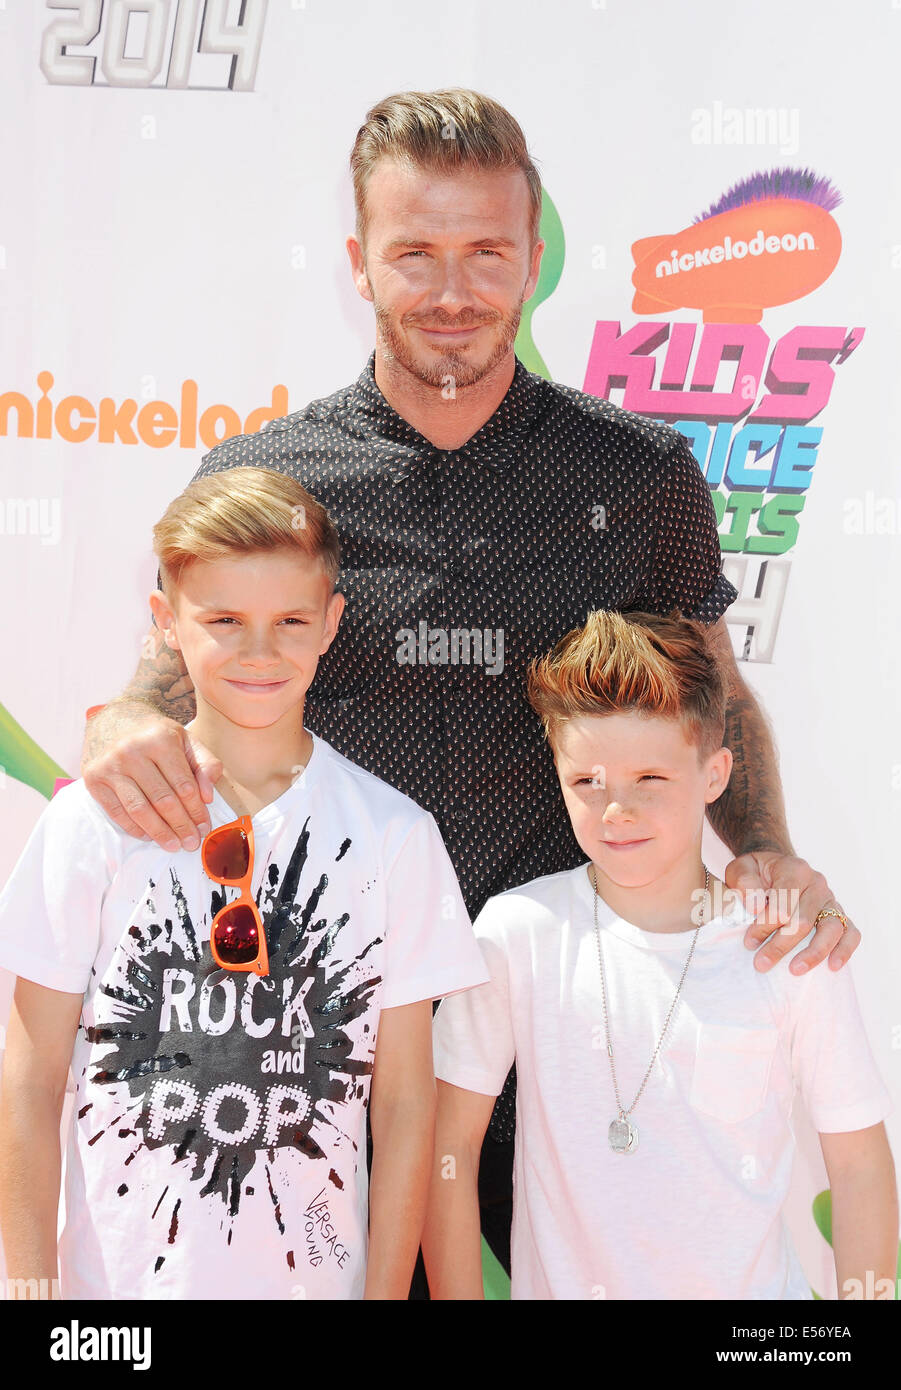 El futbolista inglés David Beckham con sus hijos Romeo y Cruz a la izquierda Foto de stock